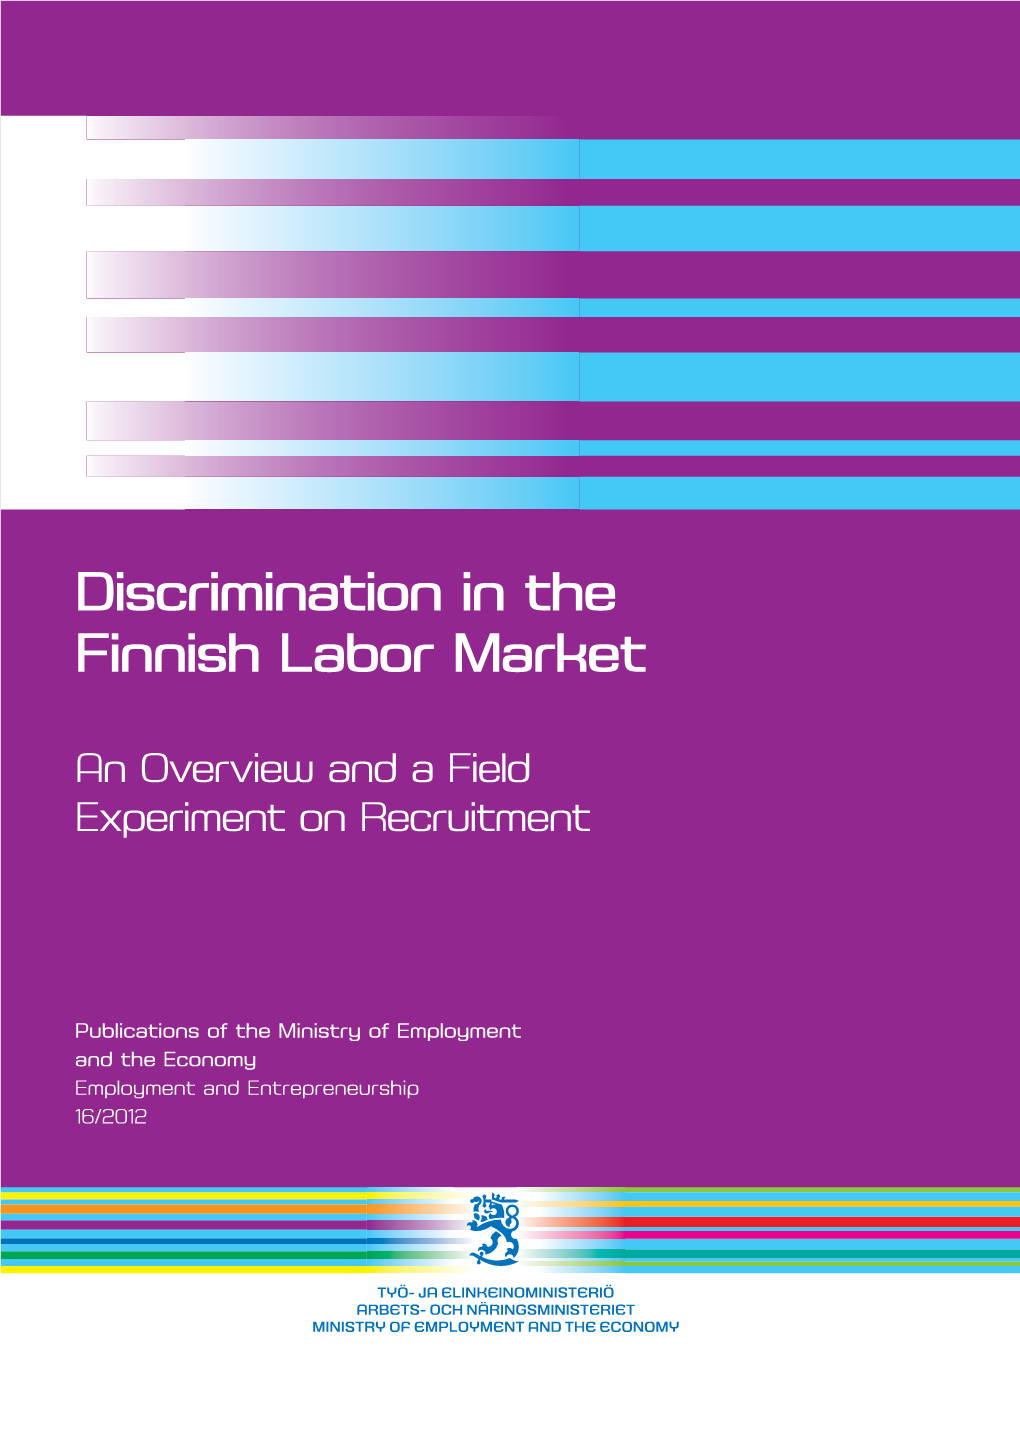 Discrimination in the Finnish Labor Market